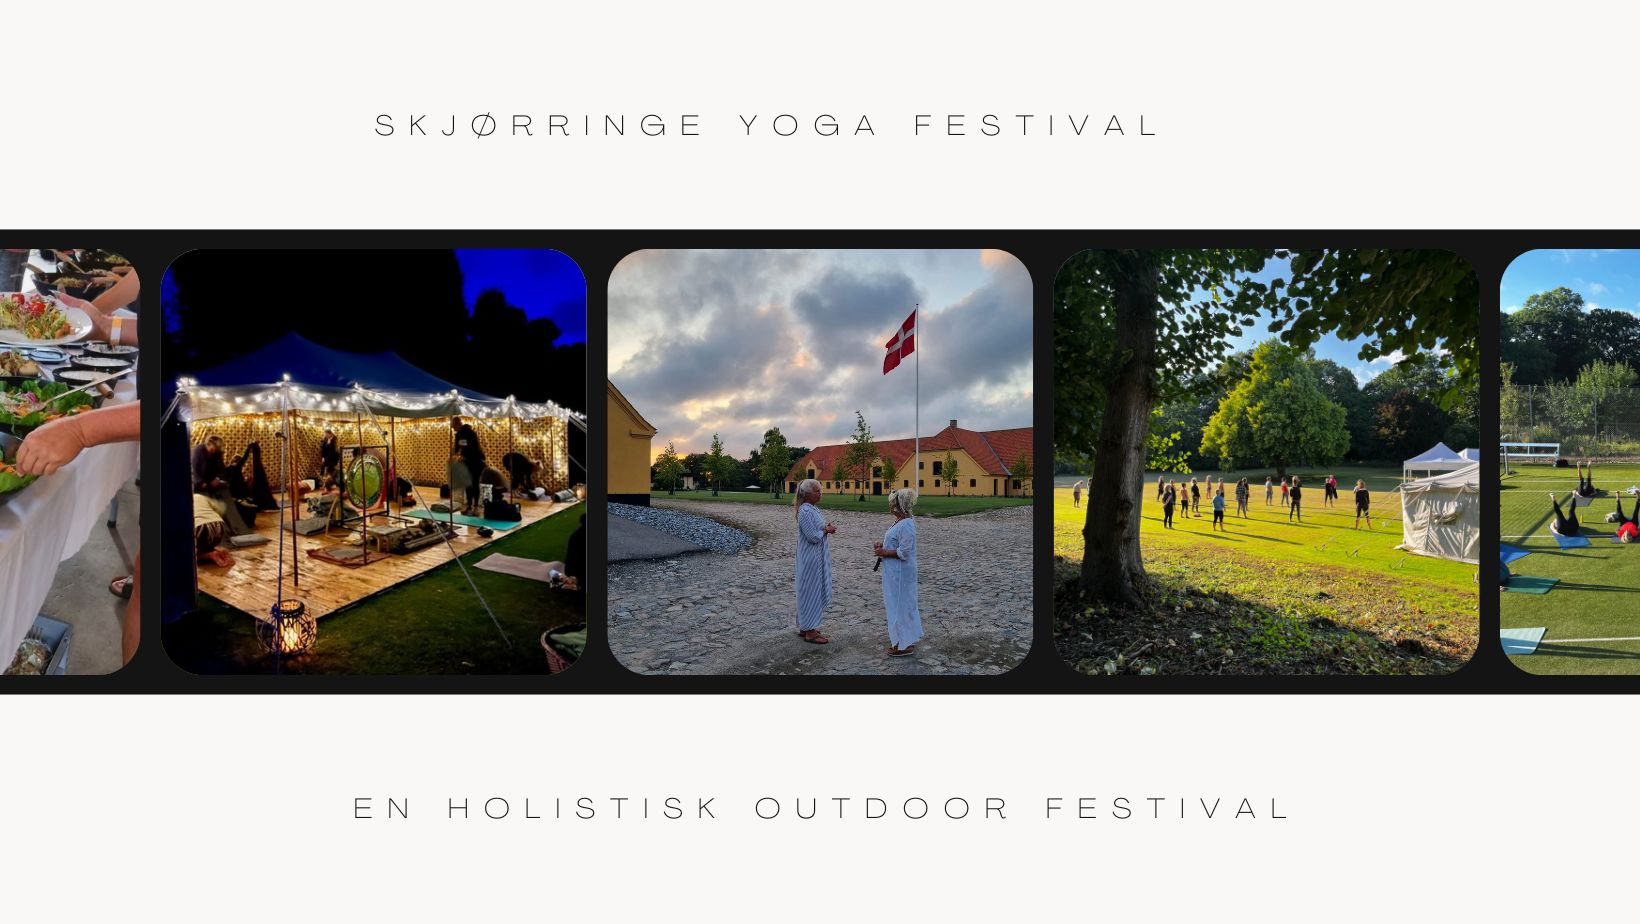 Skjørringe Yoga Festival er en outdoor festival med forskellige yoga modaliteter, qi gong, meditation, talks og kort foredrag m.m.